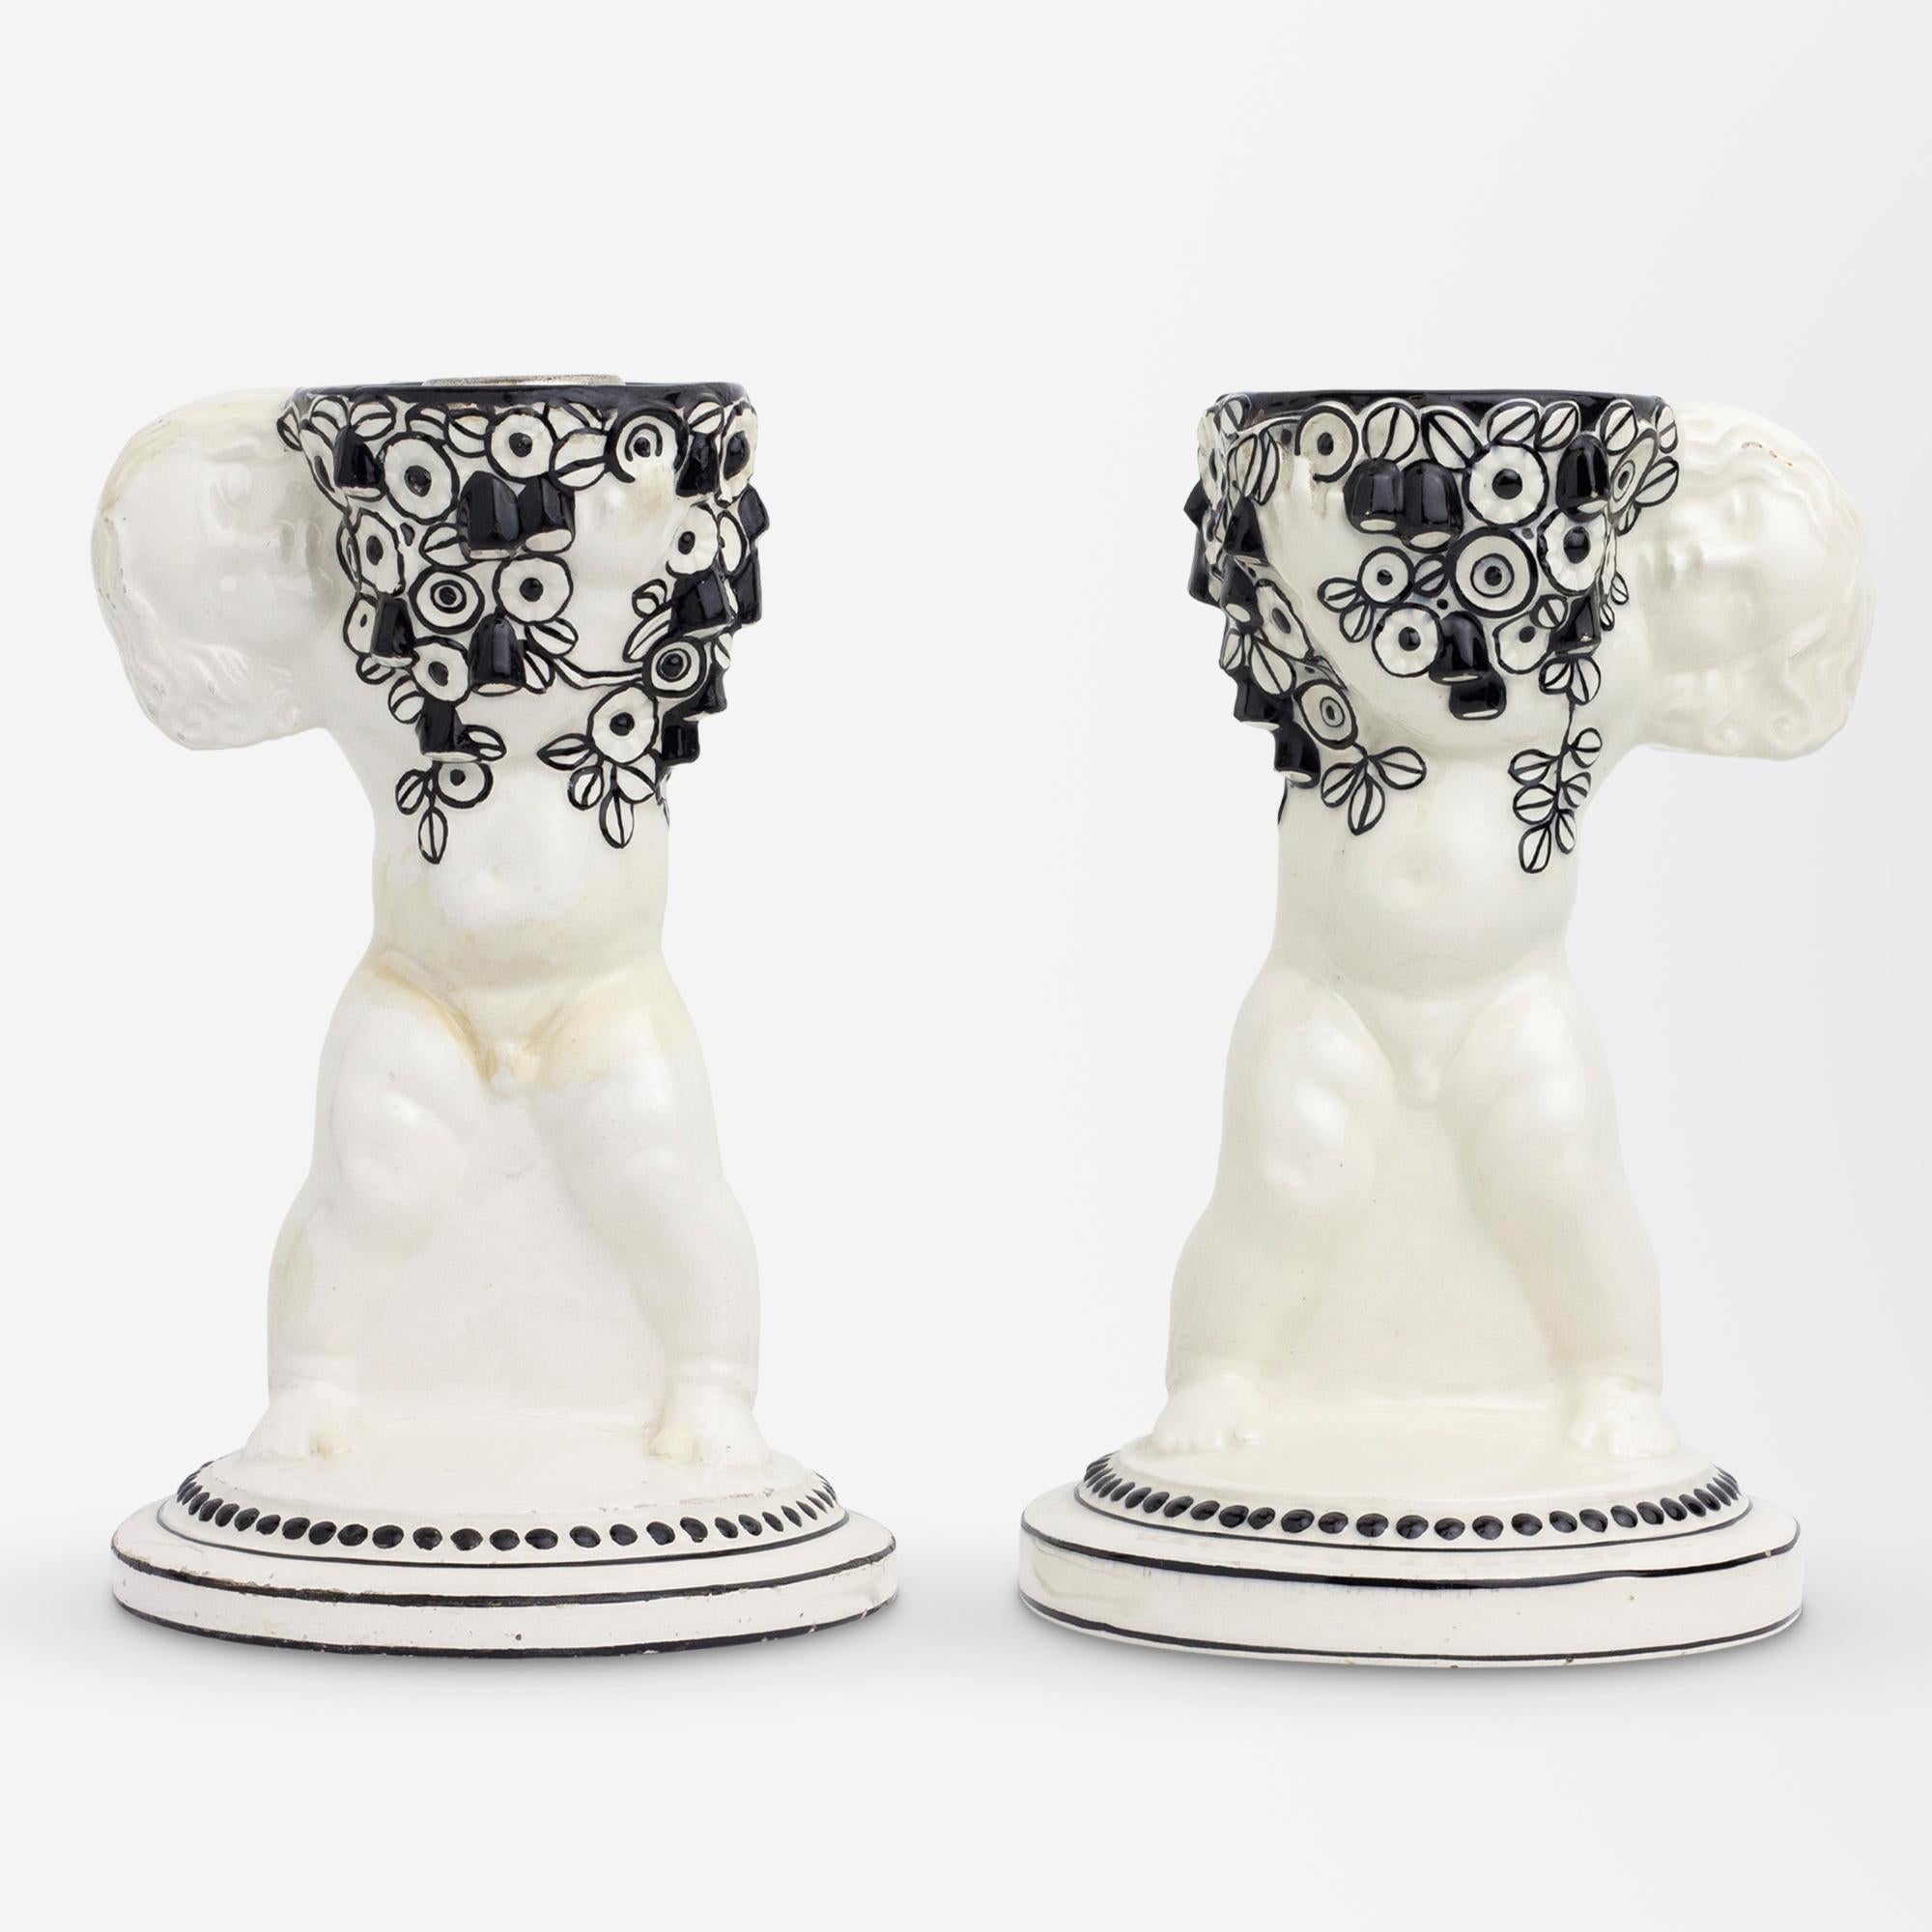 Paire de bougeoirs en céramique de la Sécession viennoise en forme de putti tenant des fleurs, réalisés par Michael Powolny pour Weiner Keramik dans son style noir et blanc, vers 1907. Ces chandeliers sont devenus une paire à un moment donné de leur